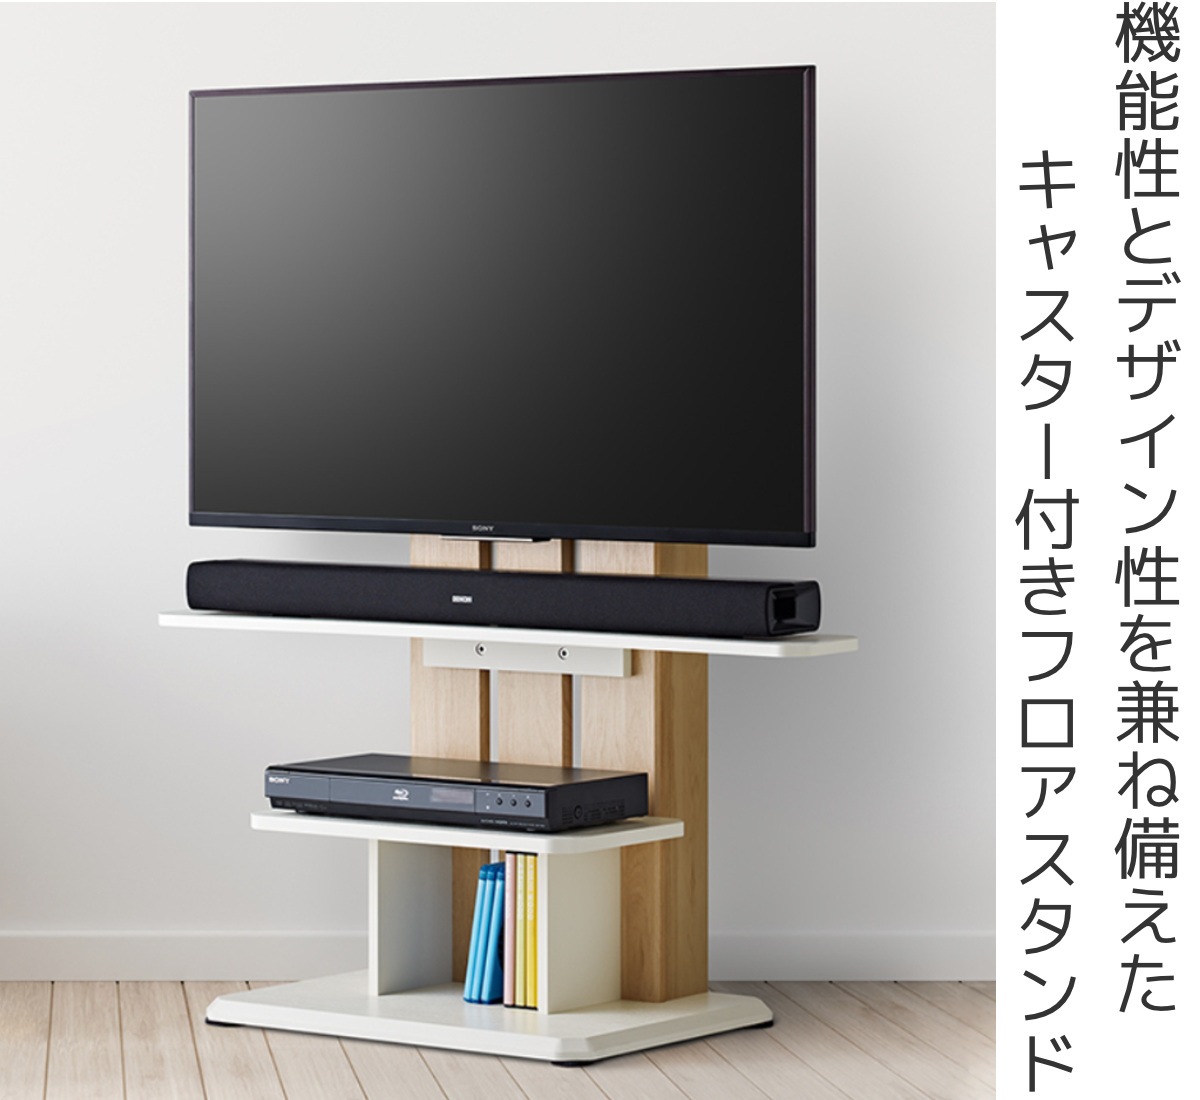 日本店舗 テレビスタンド 木調 - 机/テーブル